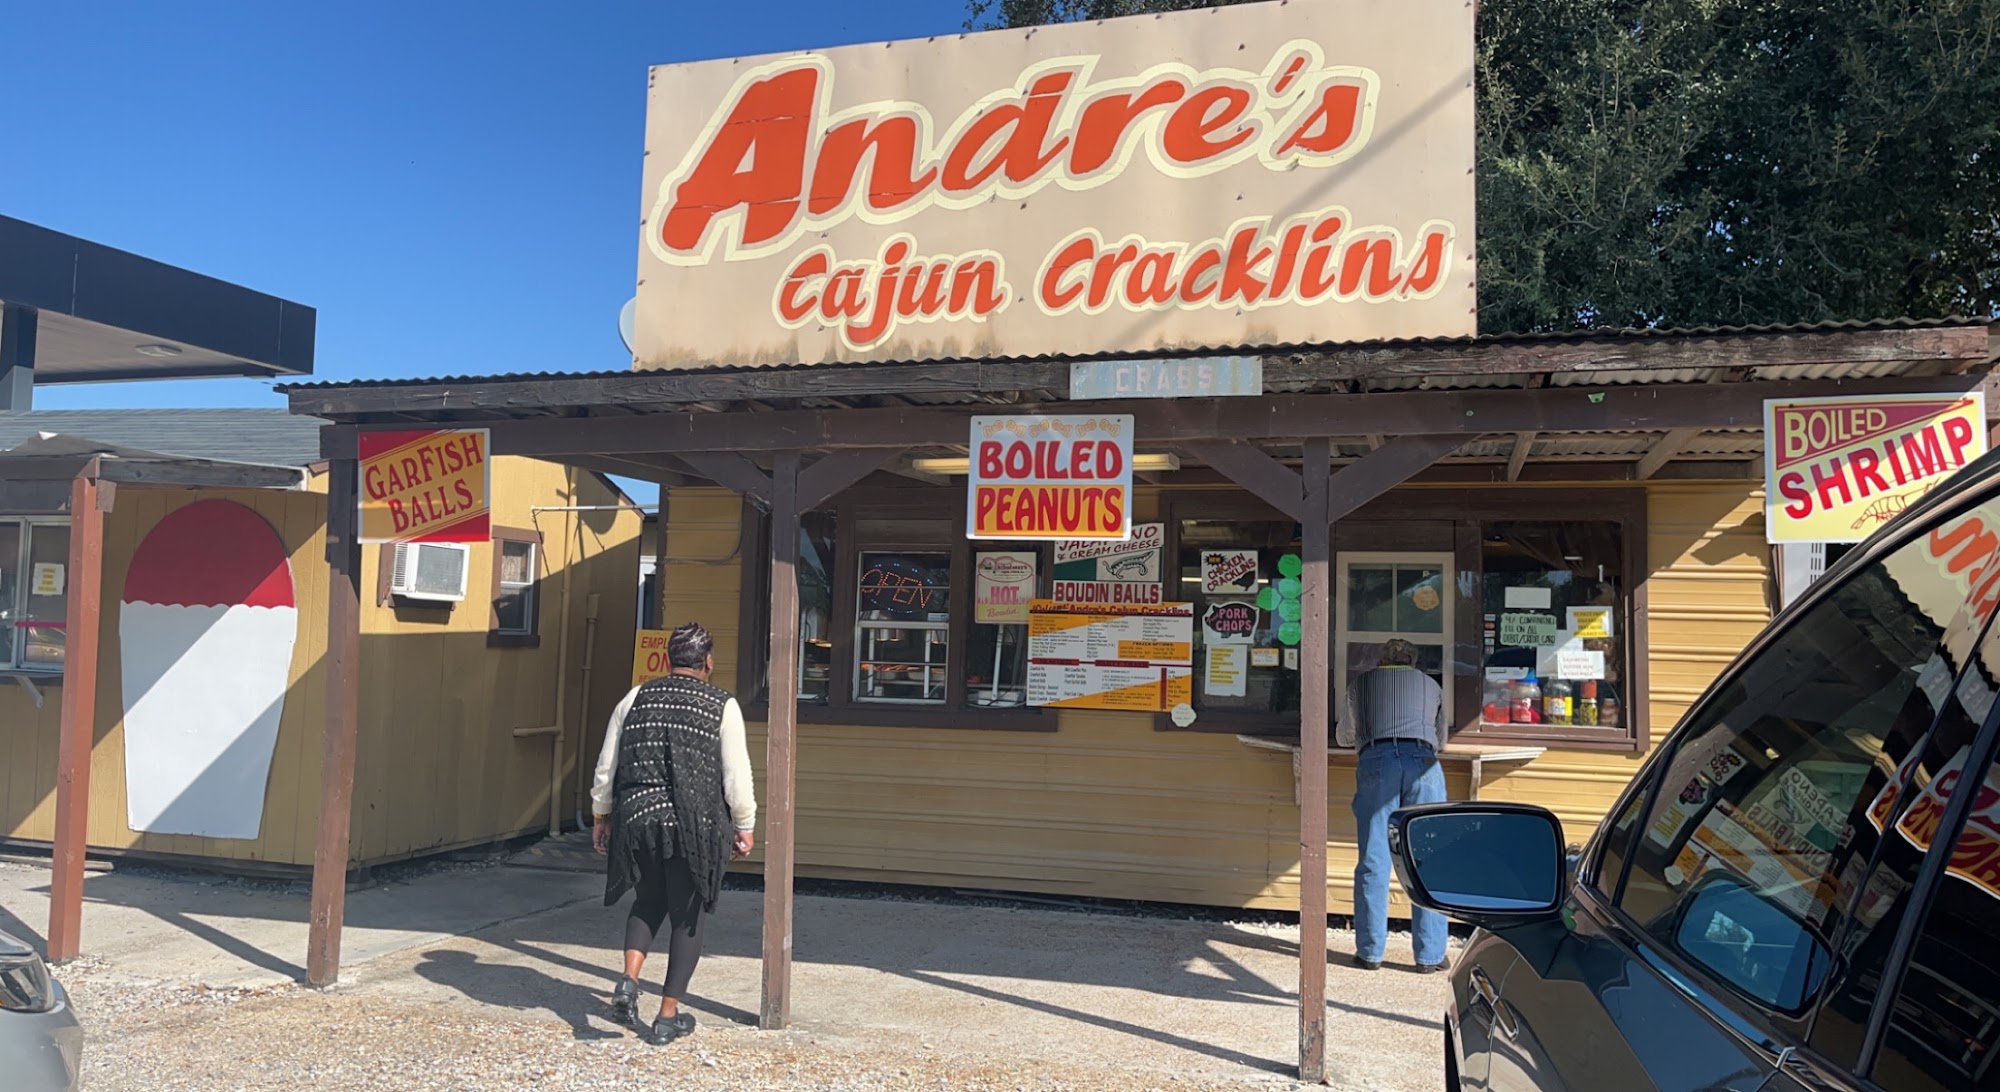 Andre's Cajun Cracklins